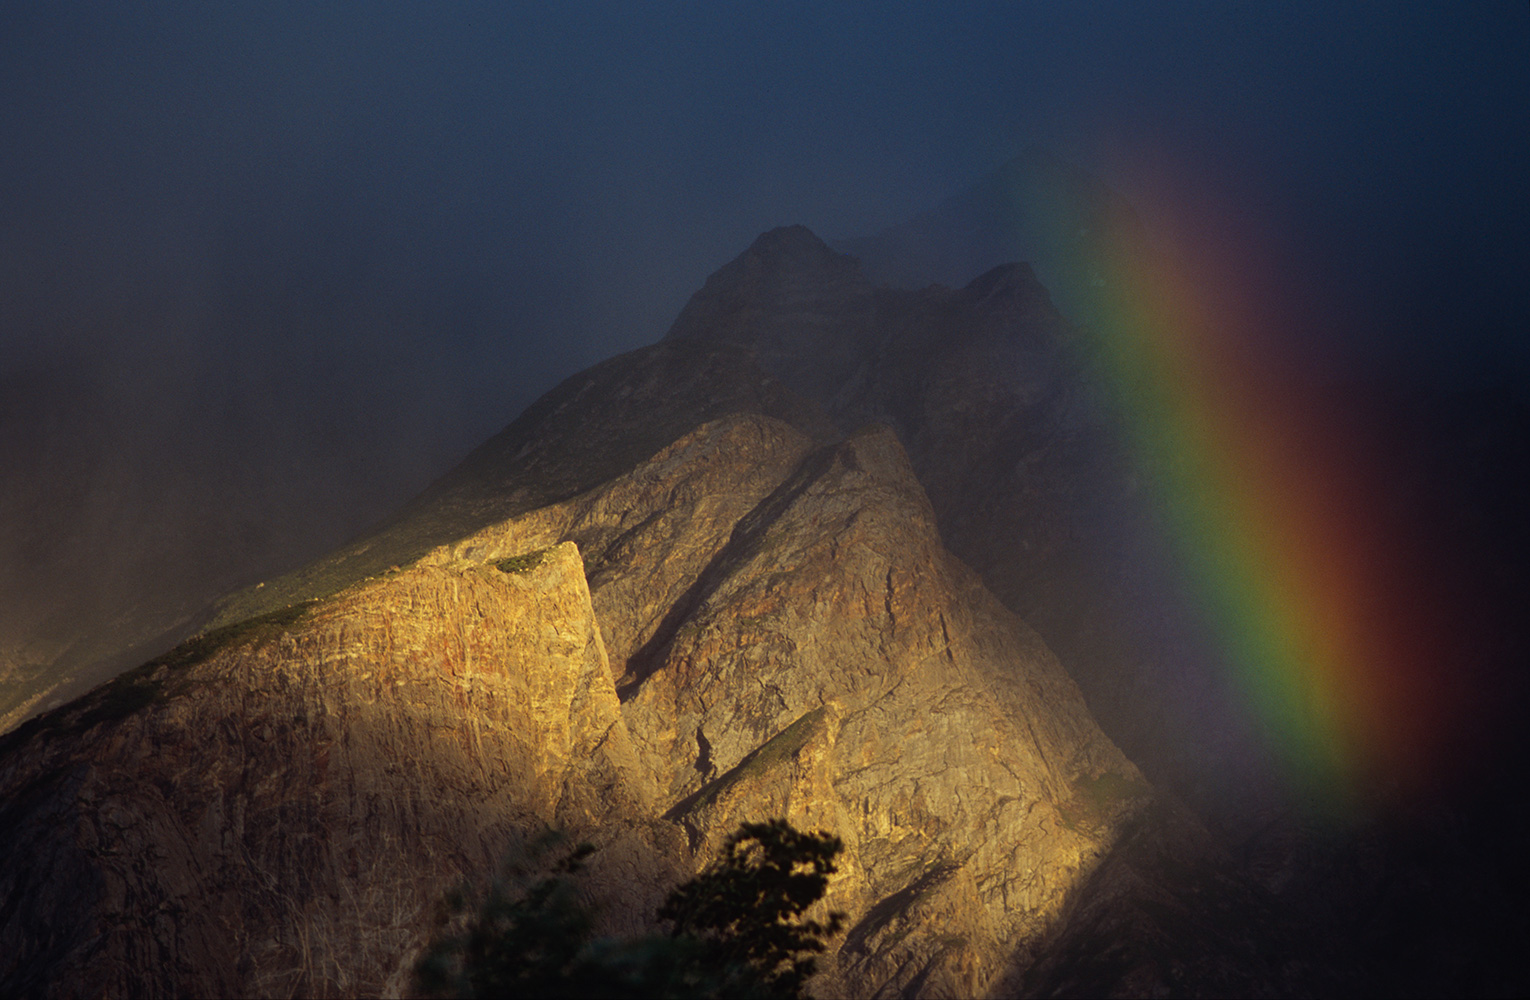 Rainbow over Askole village